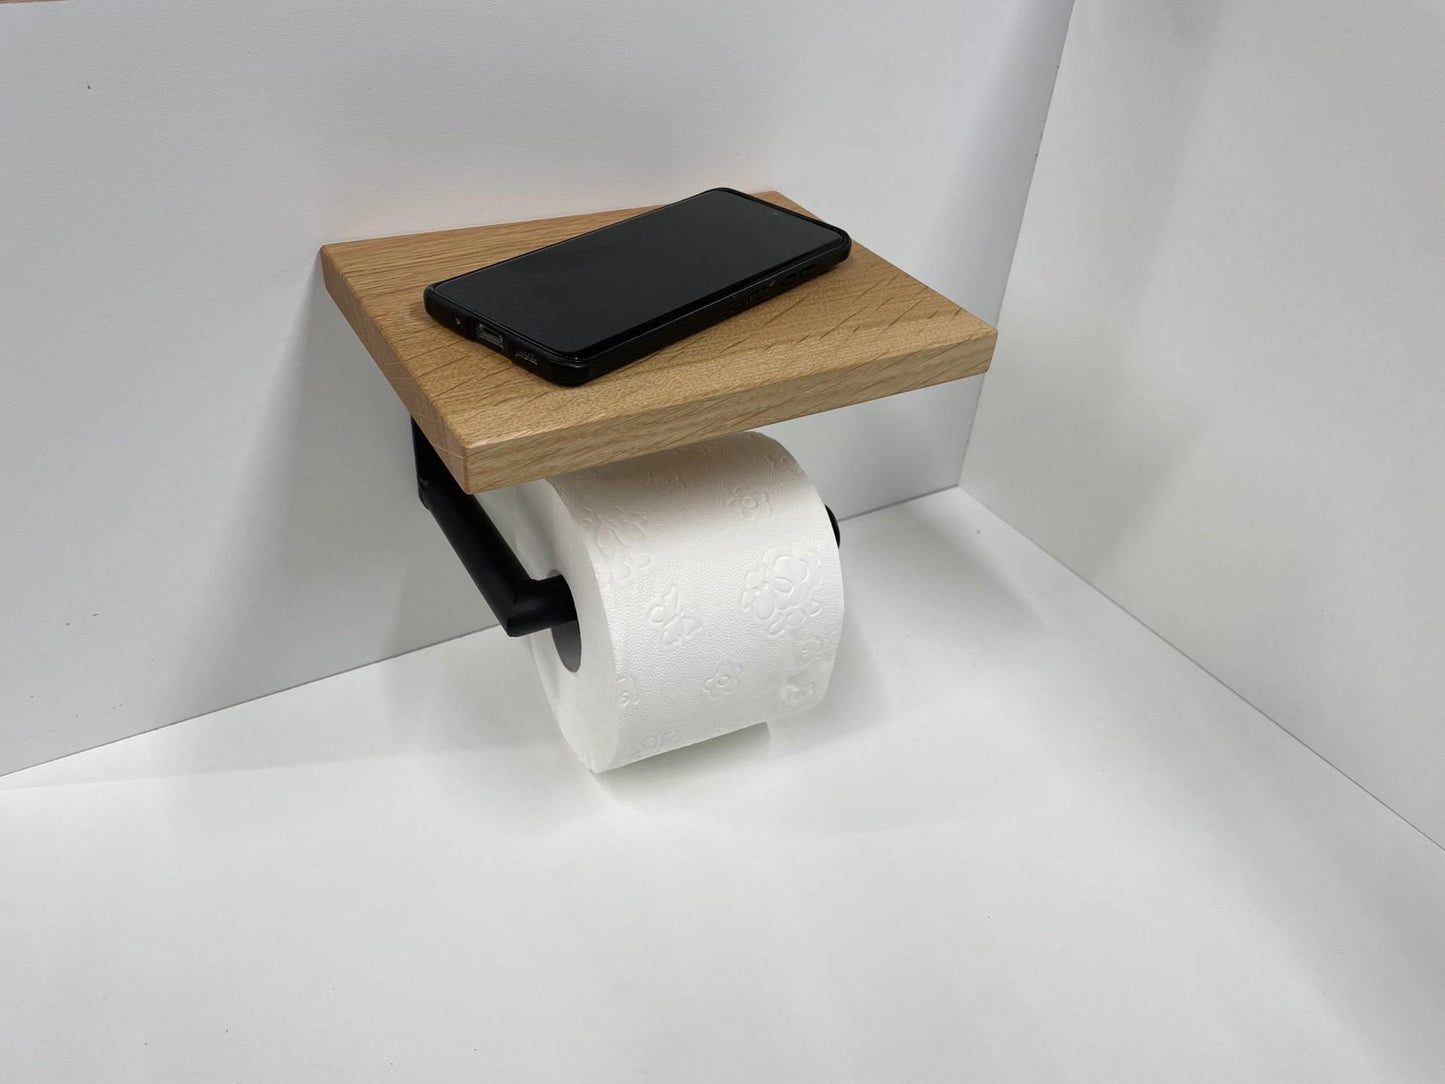 Toilettenpapierhalter, Klopapierhalter Massivholz Eiche glatt, Made in Germany - werkzeug-online24